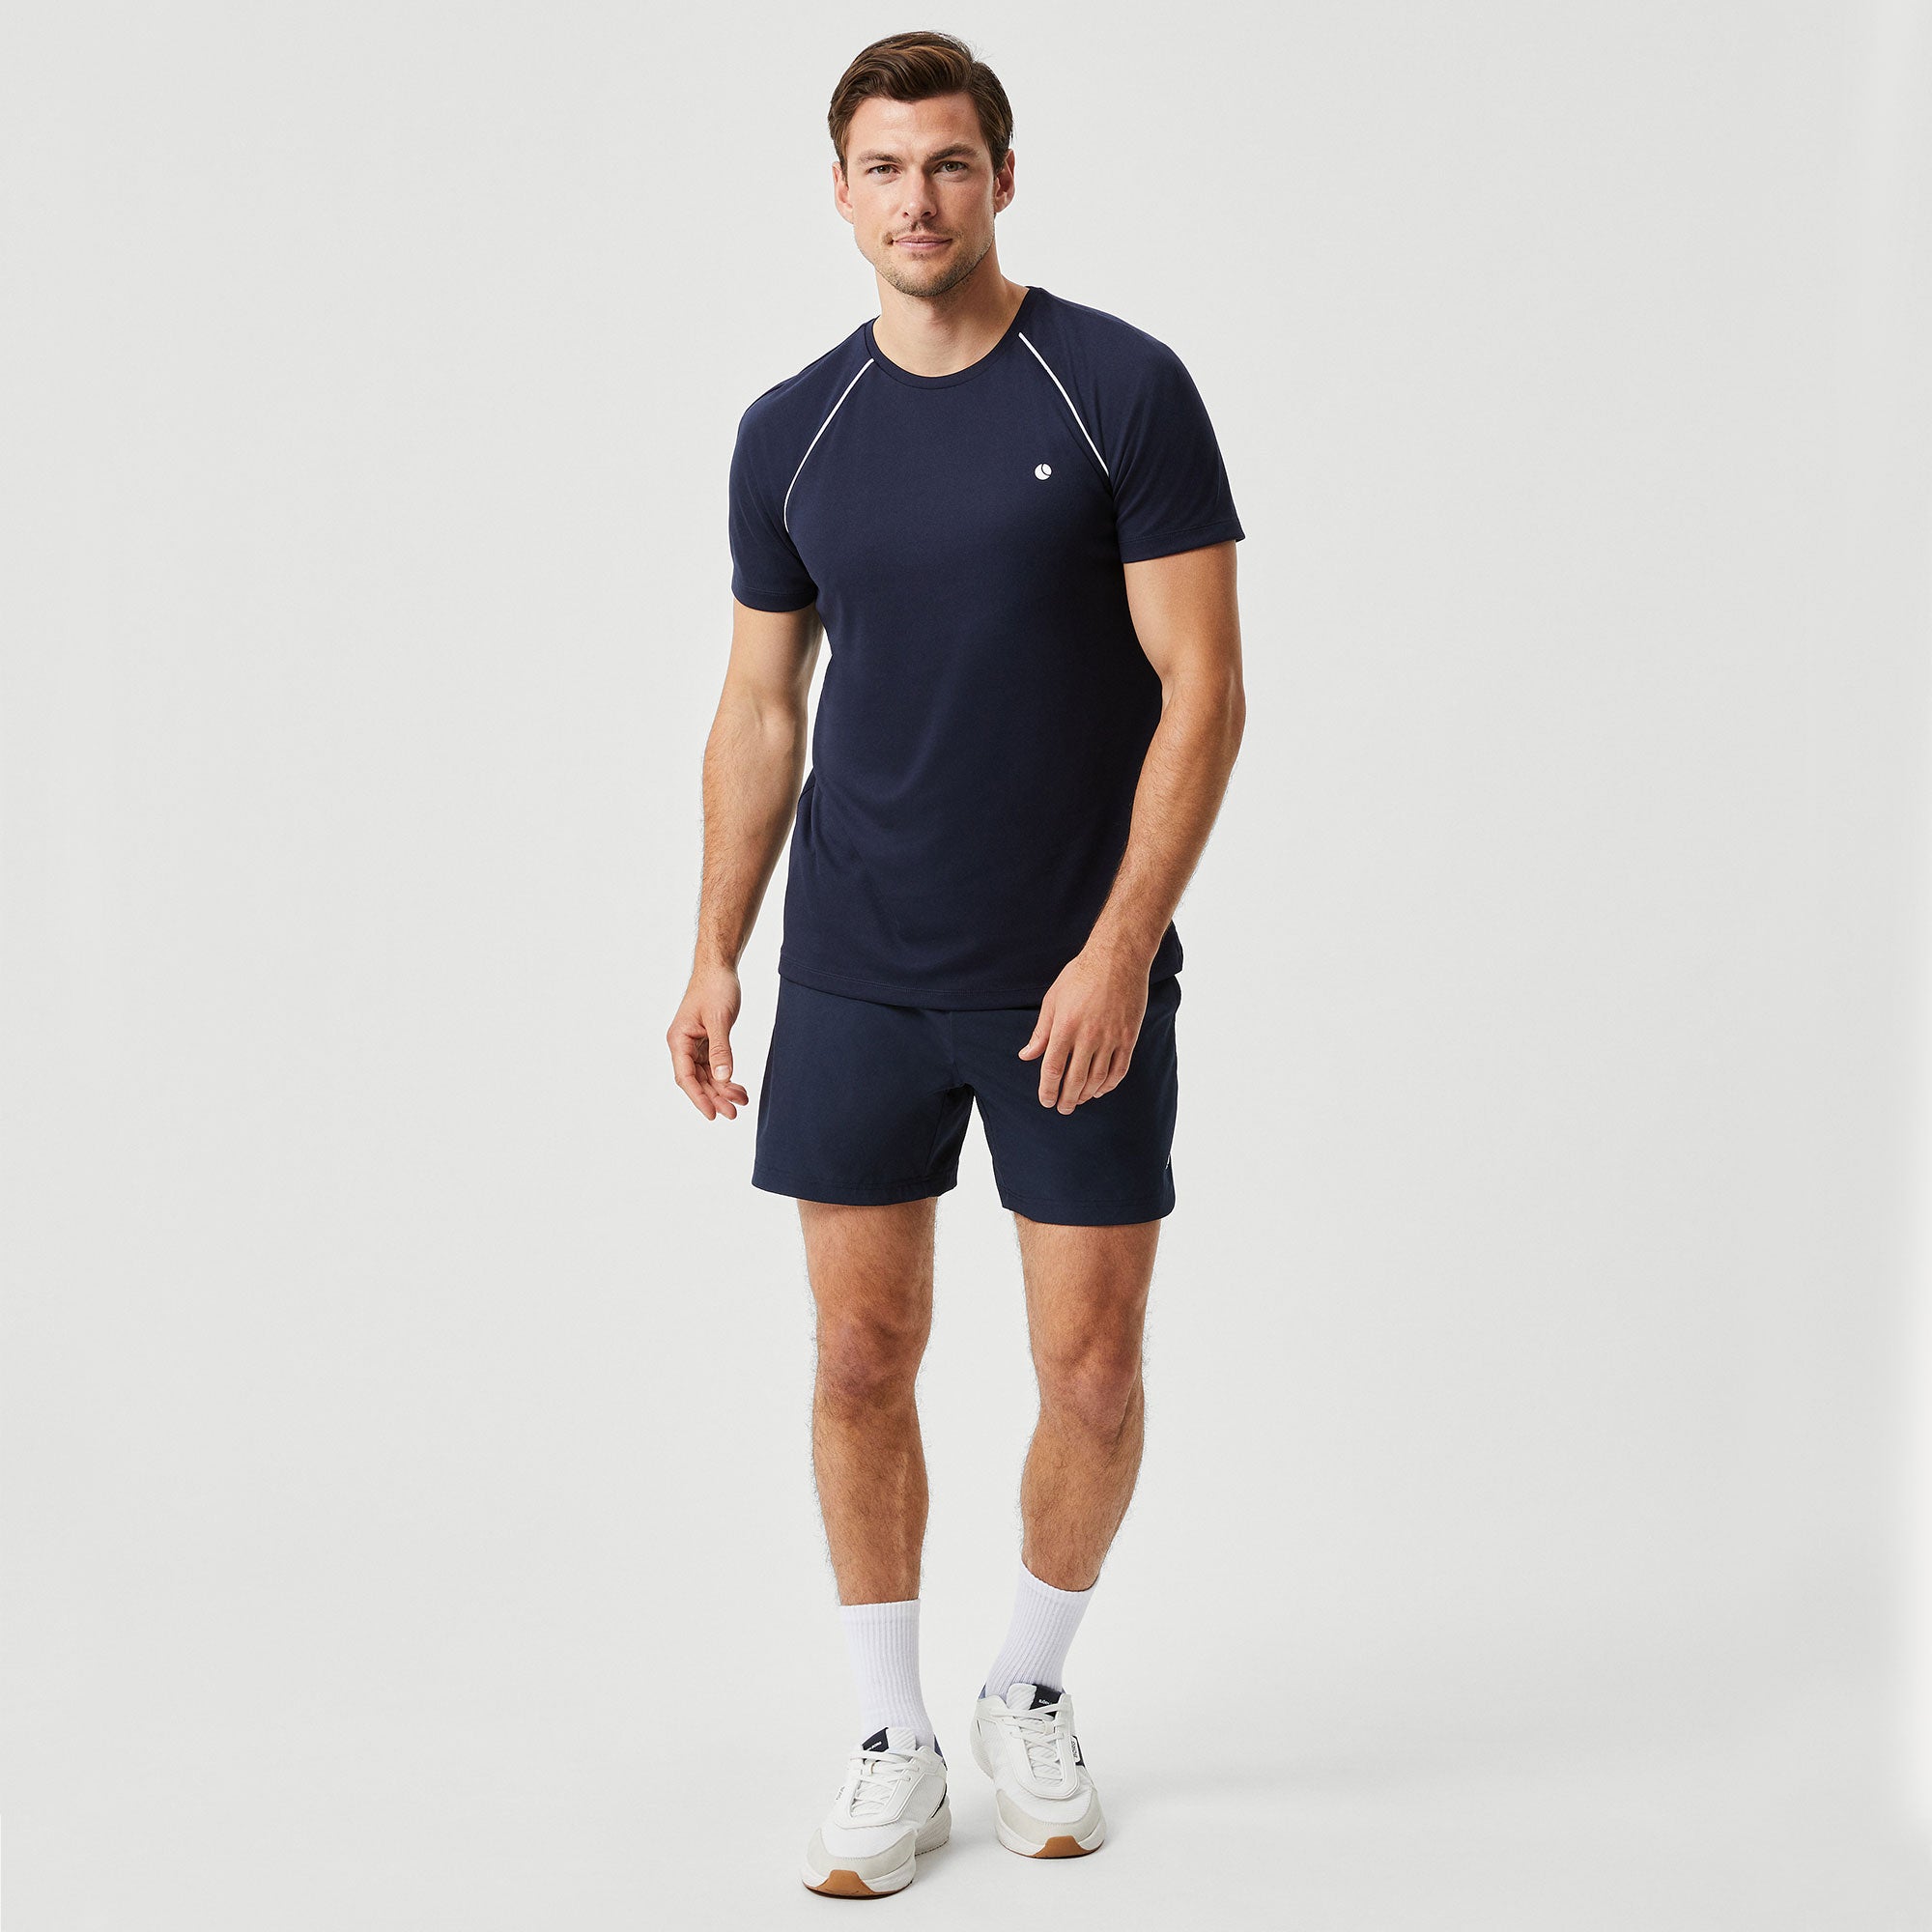 Björn Borg Ace Racquet Men's Tennis Shirt - Dark Blue (5)